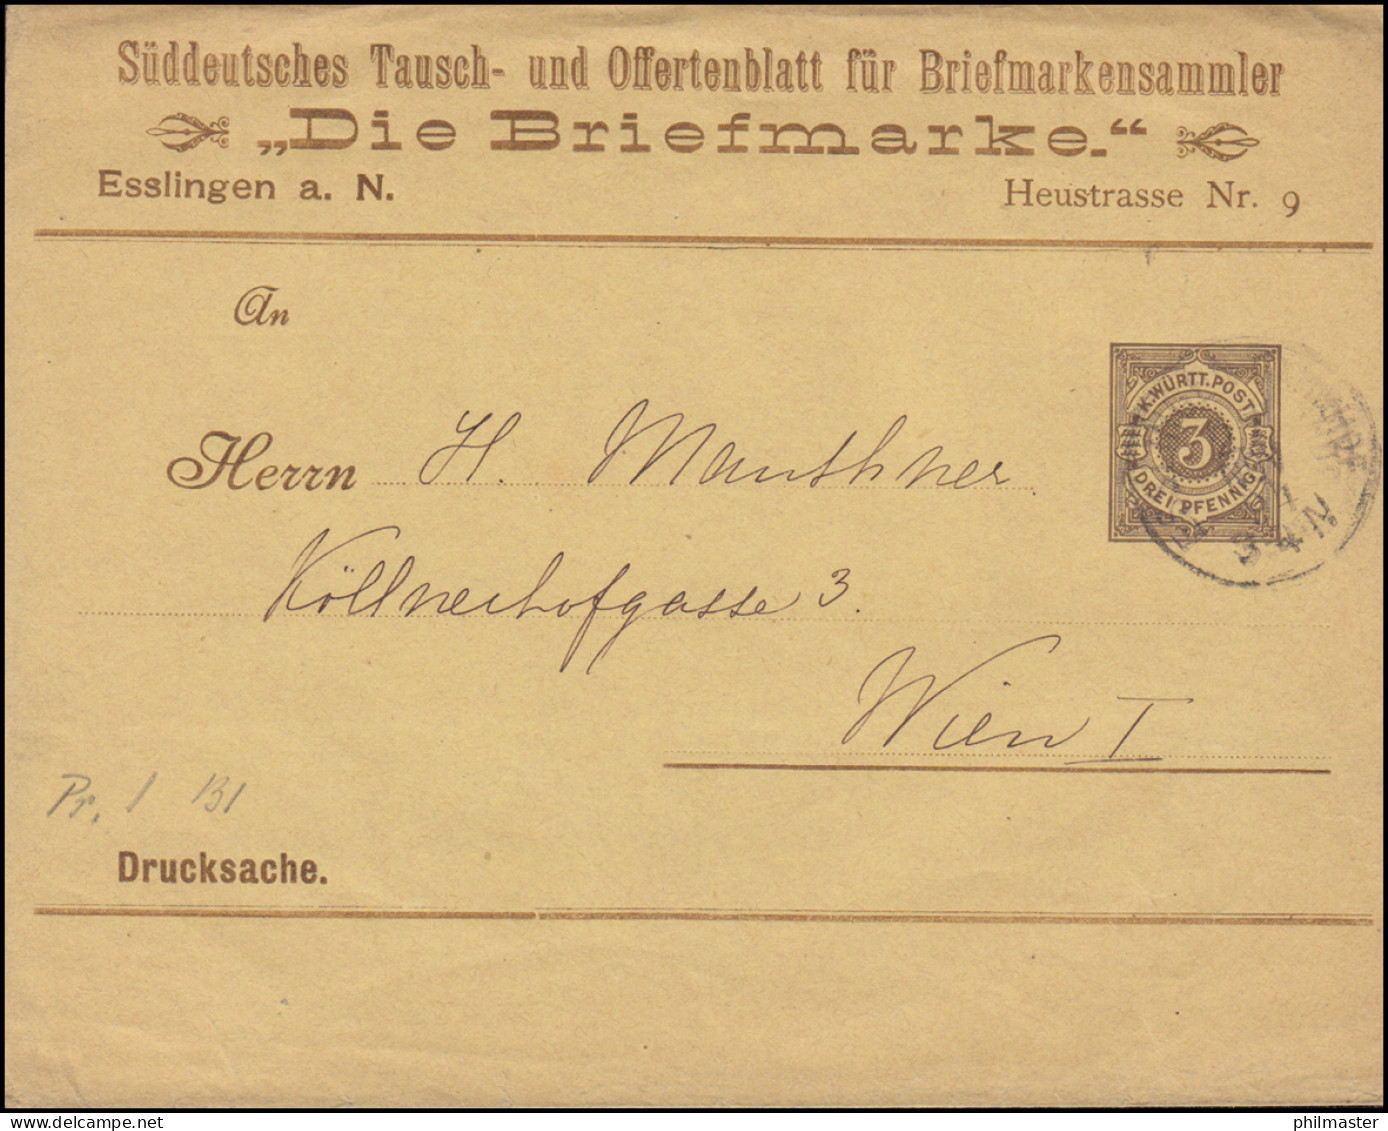 Württemberg PS 2 Streifband Die Briefmarke ESSLINGEN-BAHNHOF 27.11.1894 - Ganzsachen